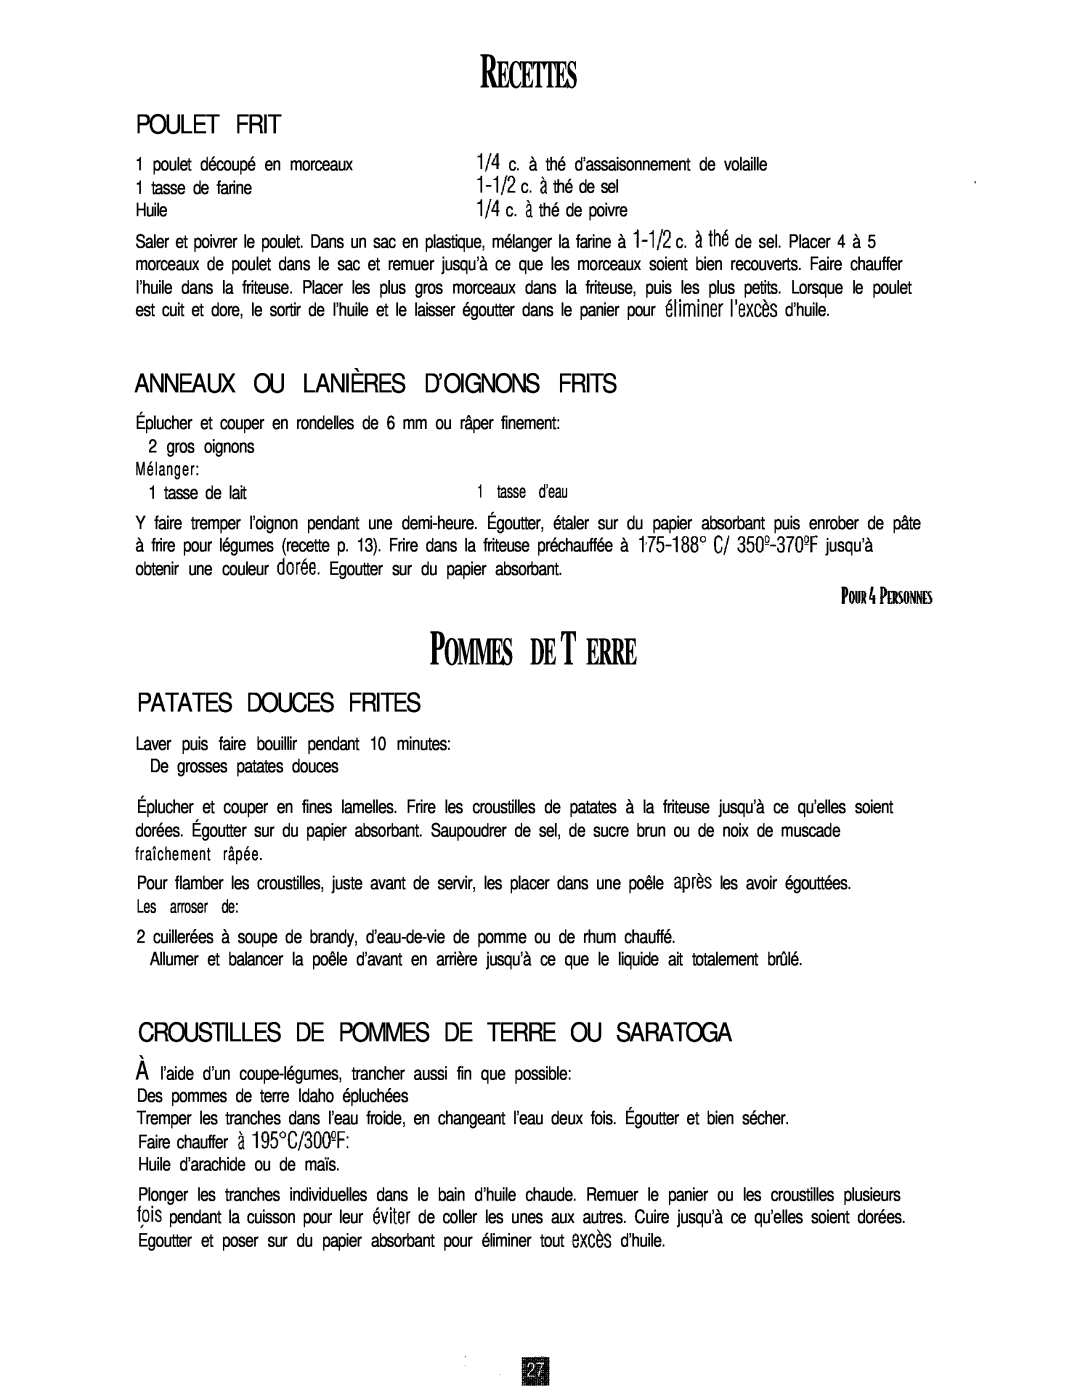 Oster 3246 manual Recettes, Pommes De T Erre, Poulet Frit, Anneaux Ou Lanières D’Oignons Frits, Patates Douces Frites 